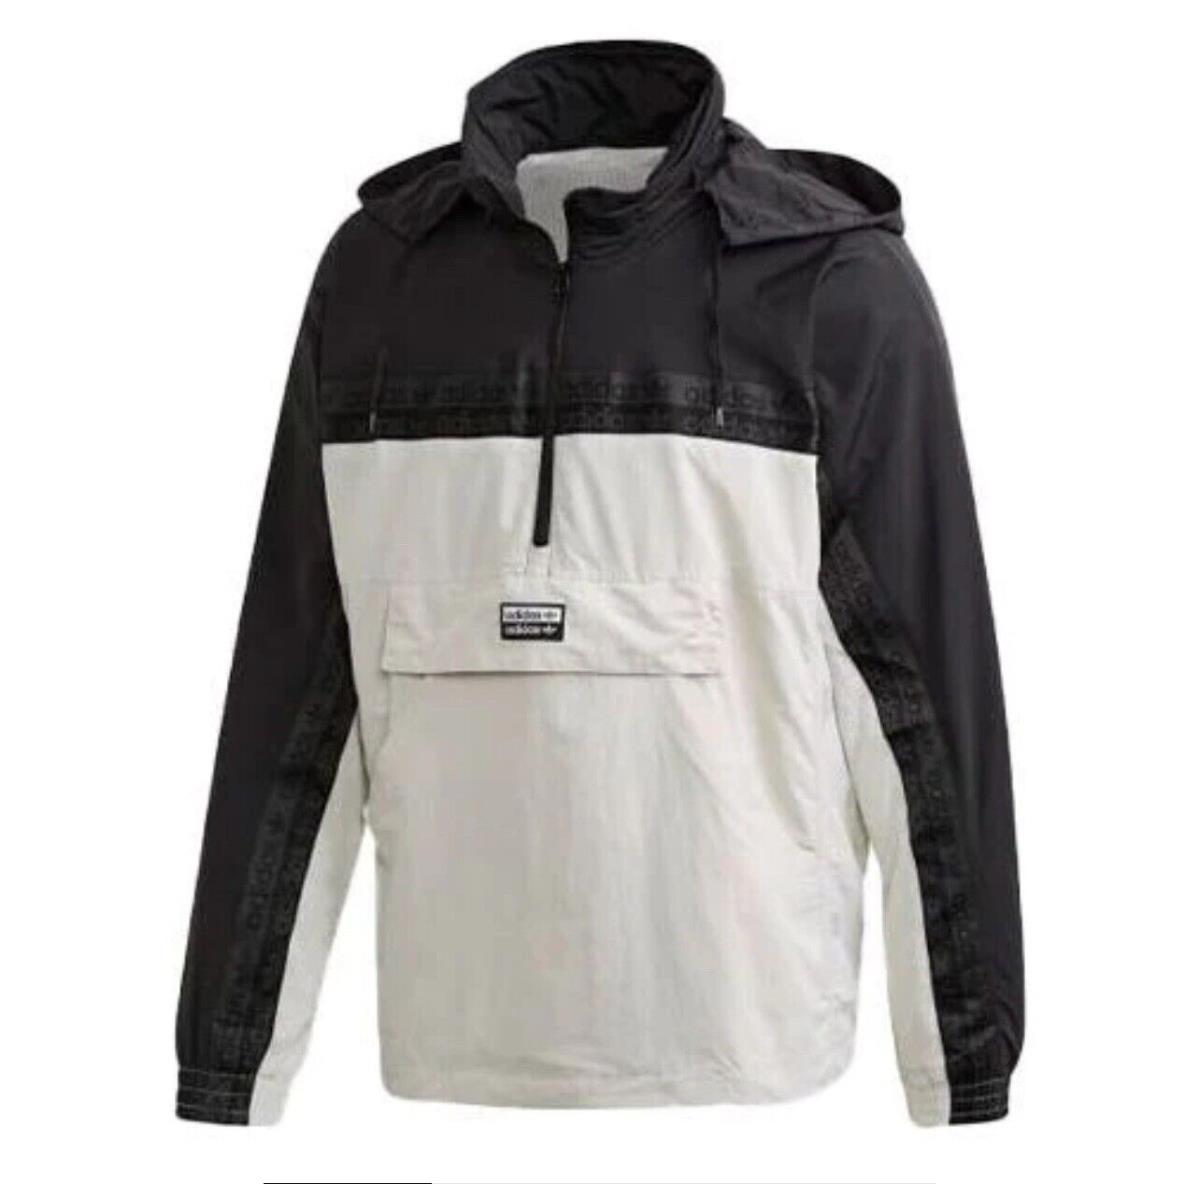 Adidas Originals Colorblock Sports Jacket Gray / Black FM2281